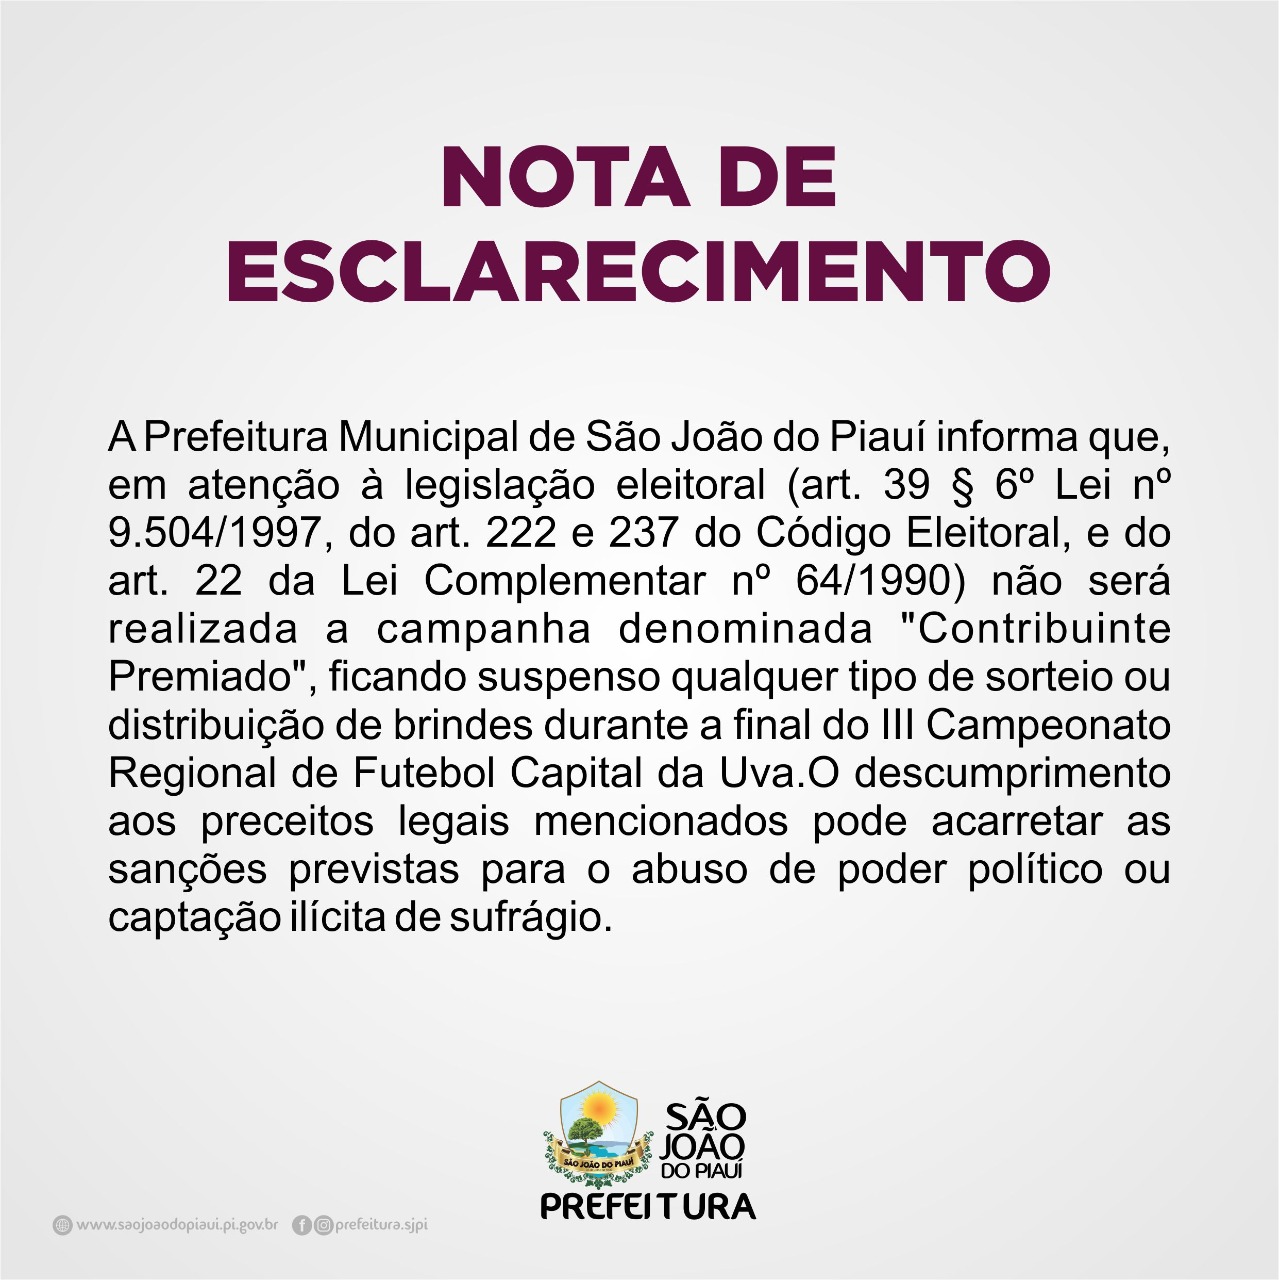 https://siteantigo.saojoaodopiaui.pi.gov.br/detalhe_noticia/visualizar/3c53bd1e332e1f2a5a216b833786a2a29ae